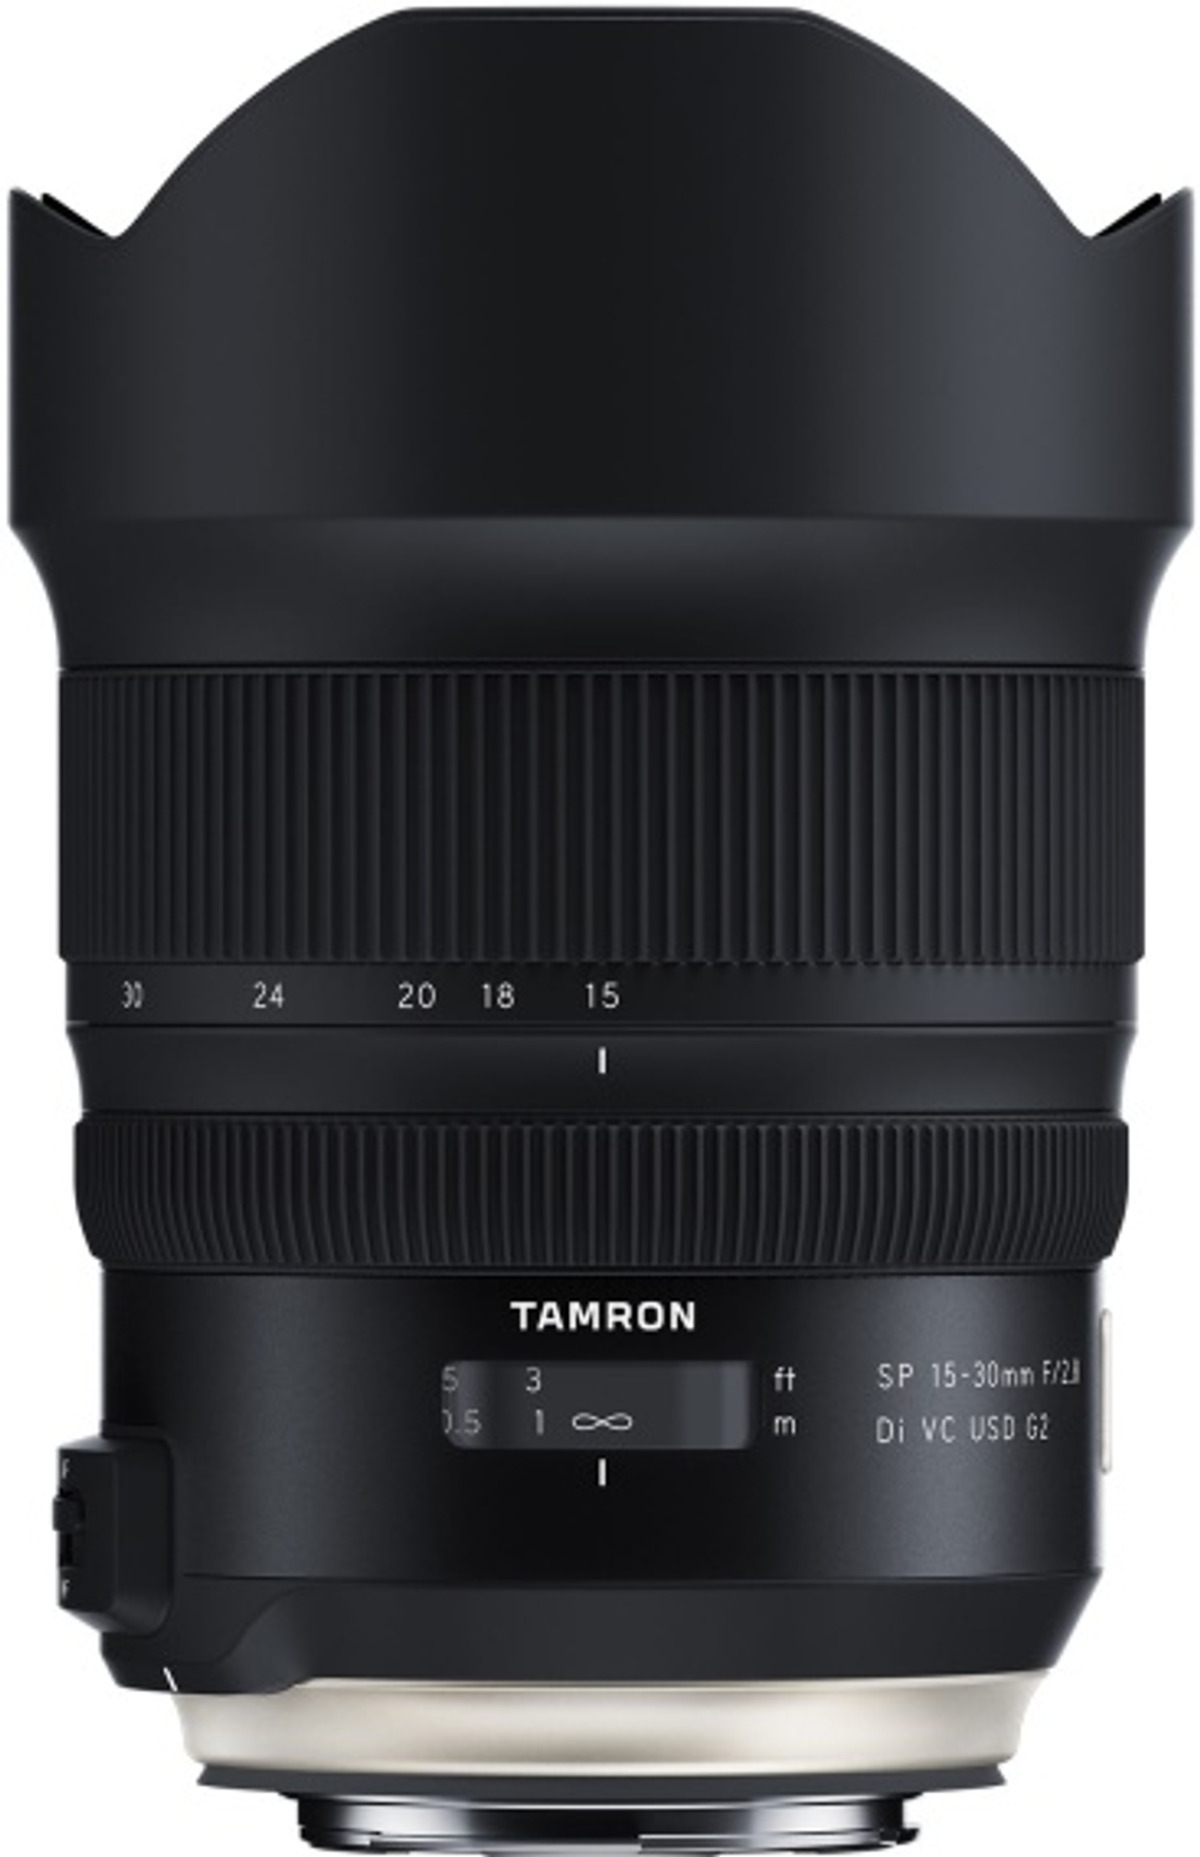 TAMRON A041E SP 15-30MM Di, VC, 15 DI CANON Schwarz) Canon F/2.8 - mm für mm VC G2 USD EF-Mount, USD f/2.8 30 (Objektiv